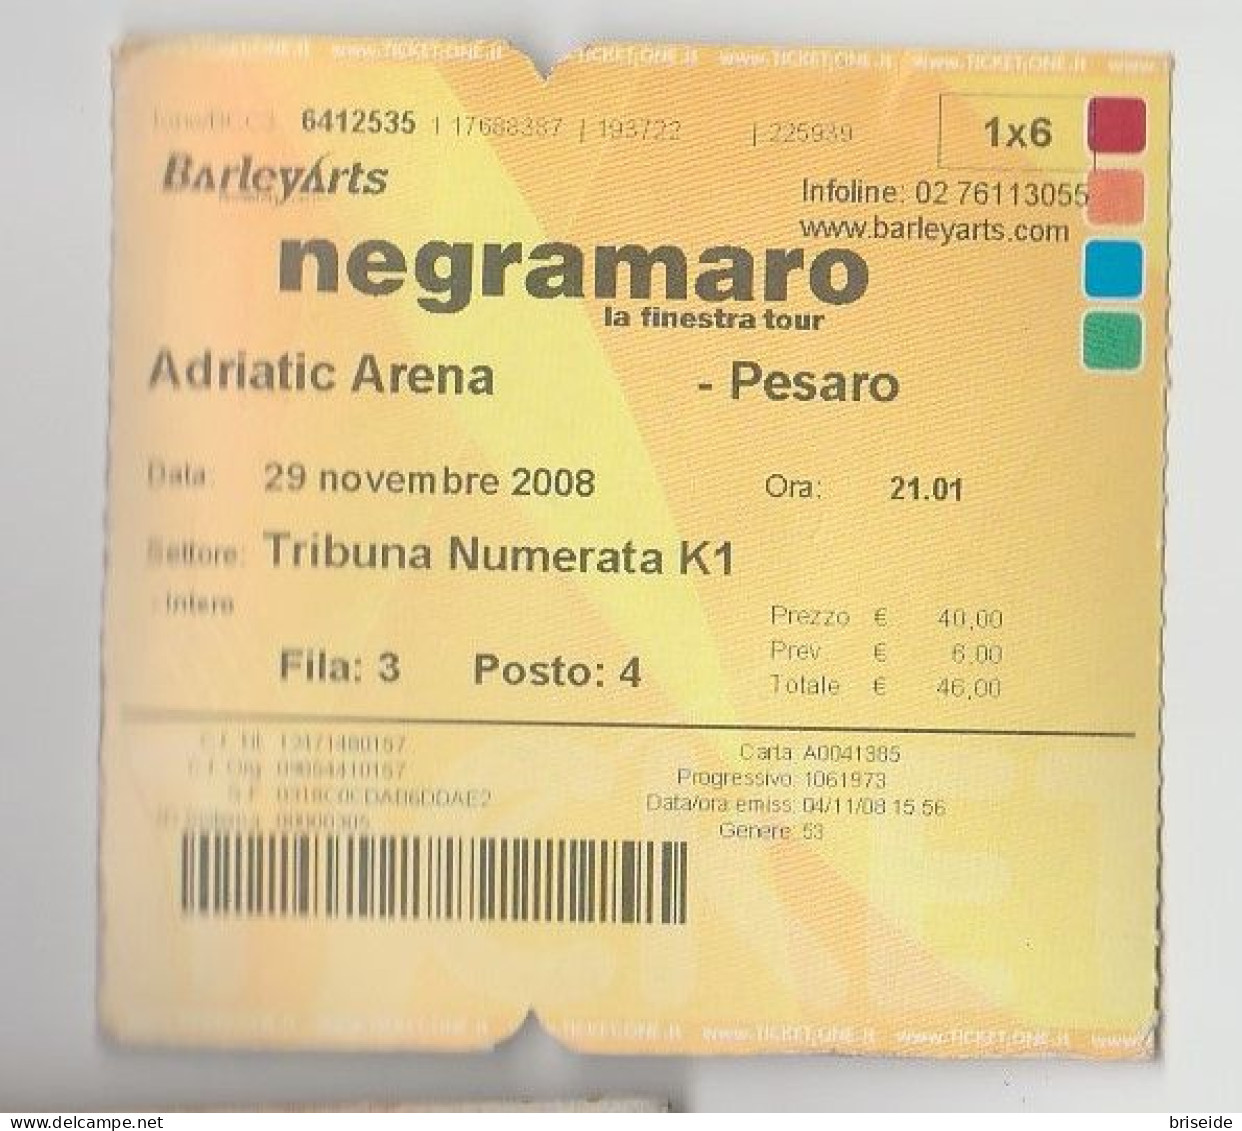 BIGLIETTO D'INGRESSO ADRIATIC ARENA PESARO NEGRAMARO LA FINESTRA TOUR 29 NOVEMBRE 2008 - Biglietti D'ingresso